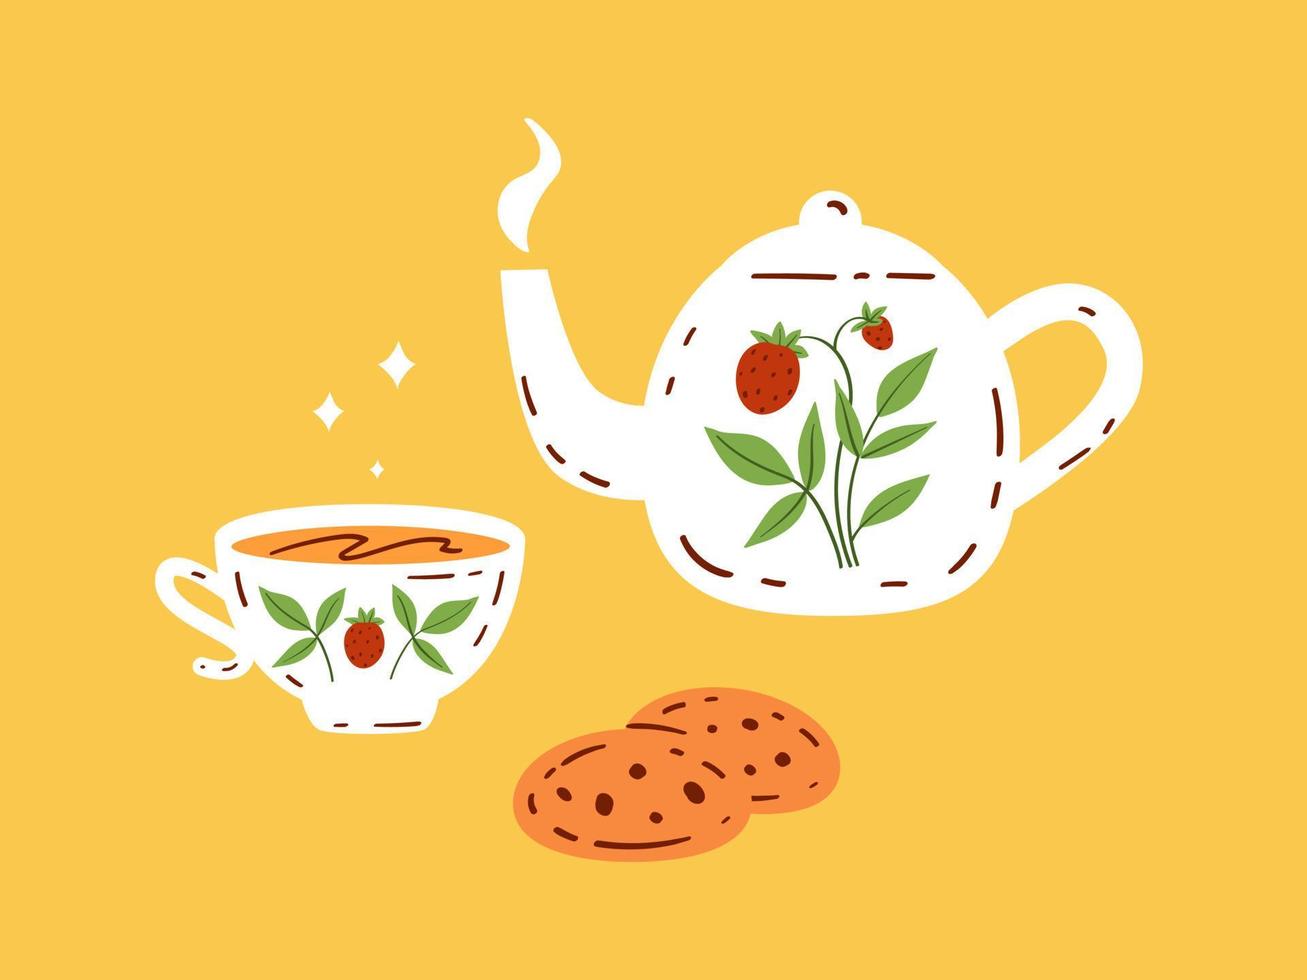 carino carta per l'ora del tè disegnata in stile doodle. illustrazione vettoriale